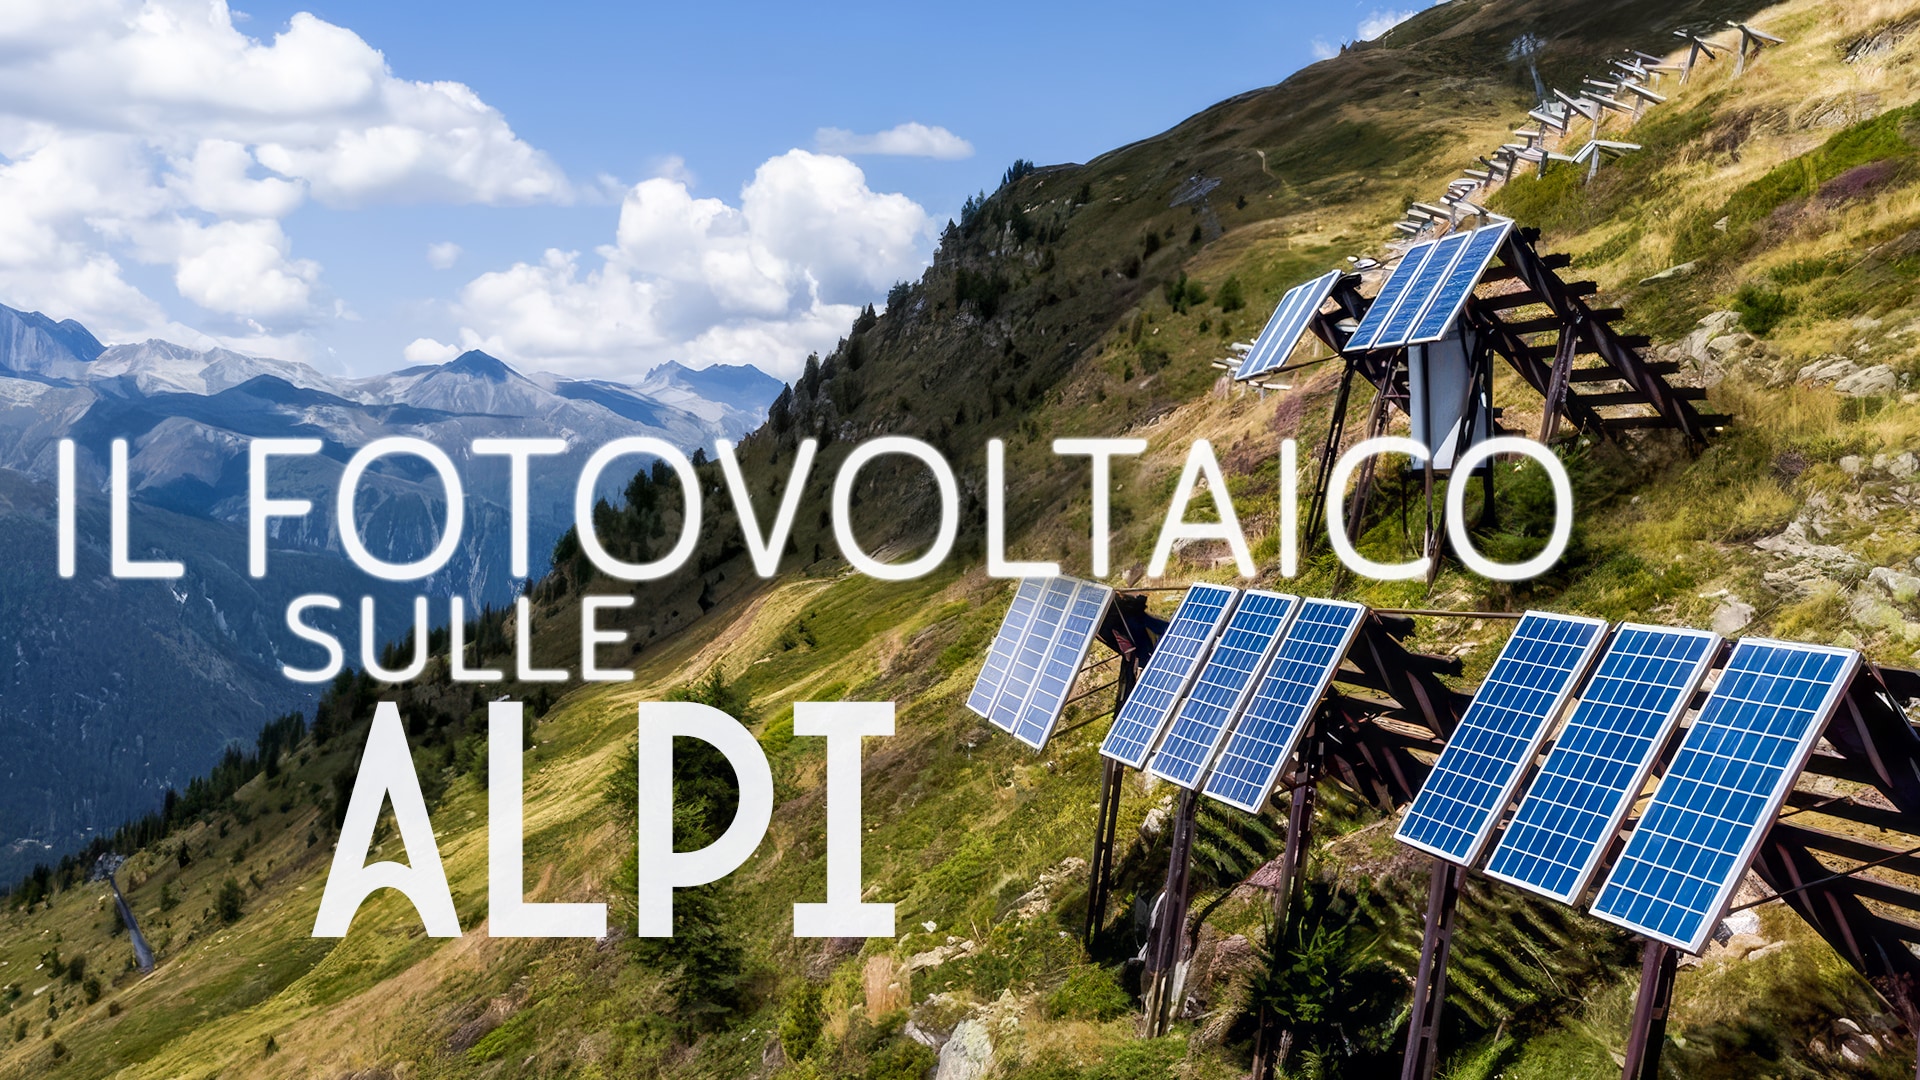 Il fotovoltaico sulle Alpi